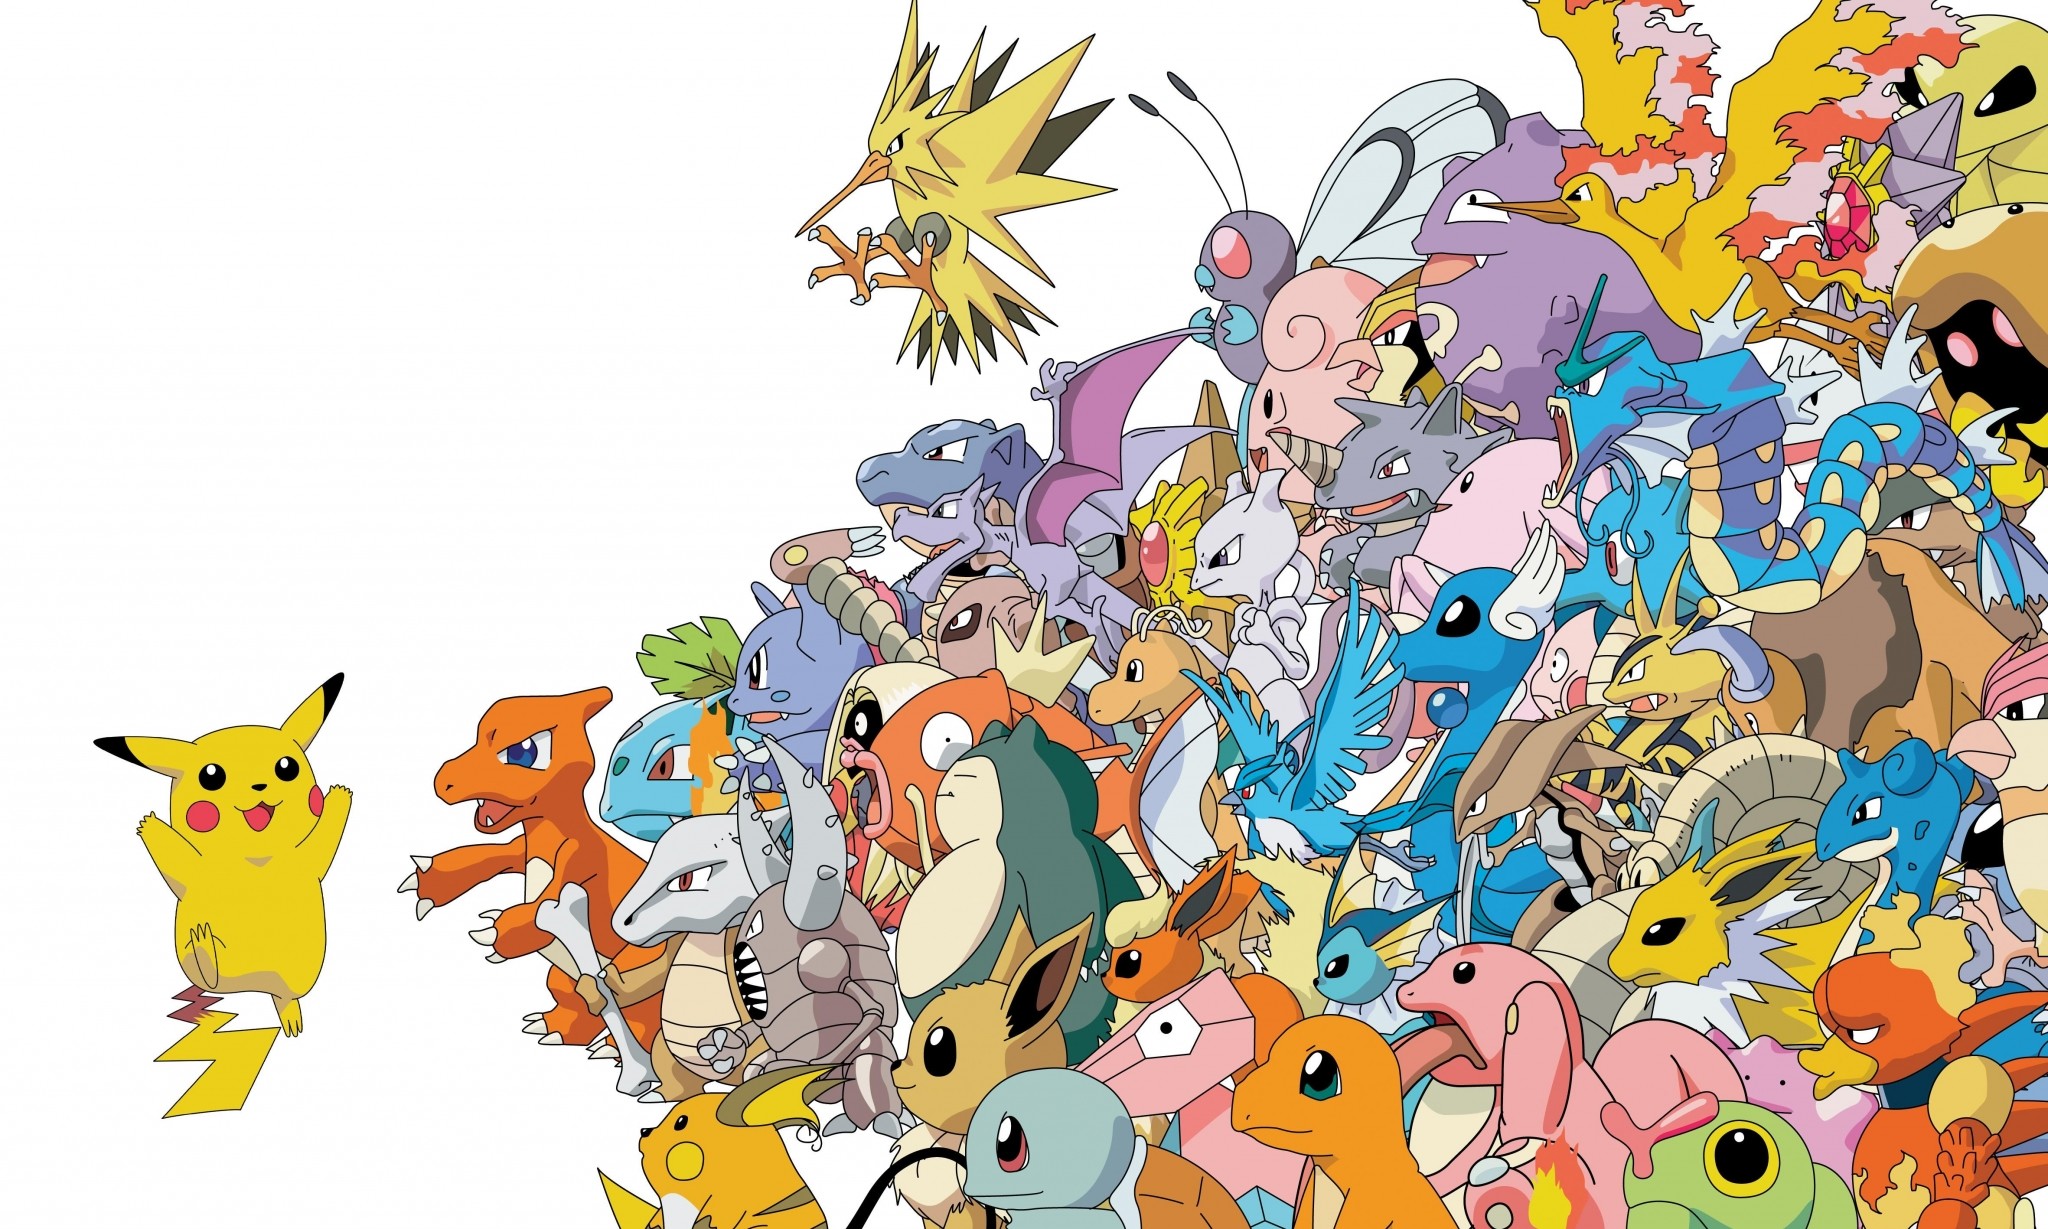 Hãy khám phá thế giới Pokemon với những sinh vật kỳ diệu đến từ những vùng đất khác nhau. Bắt đầu chuyến phiêu lưu của bạn với những con Pokemon đáng yêu và đầy màu sắc. Mỗi loài đều có những kỹ năng đặc biệt riêng mà bạn không thể bỏ qua. Hãy thưởng thức và cảm nhận những giây phút thú vị tại vùng đất Pokemon.